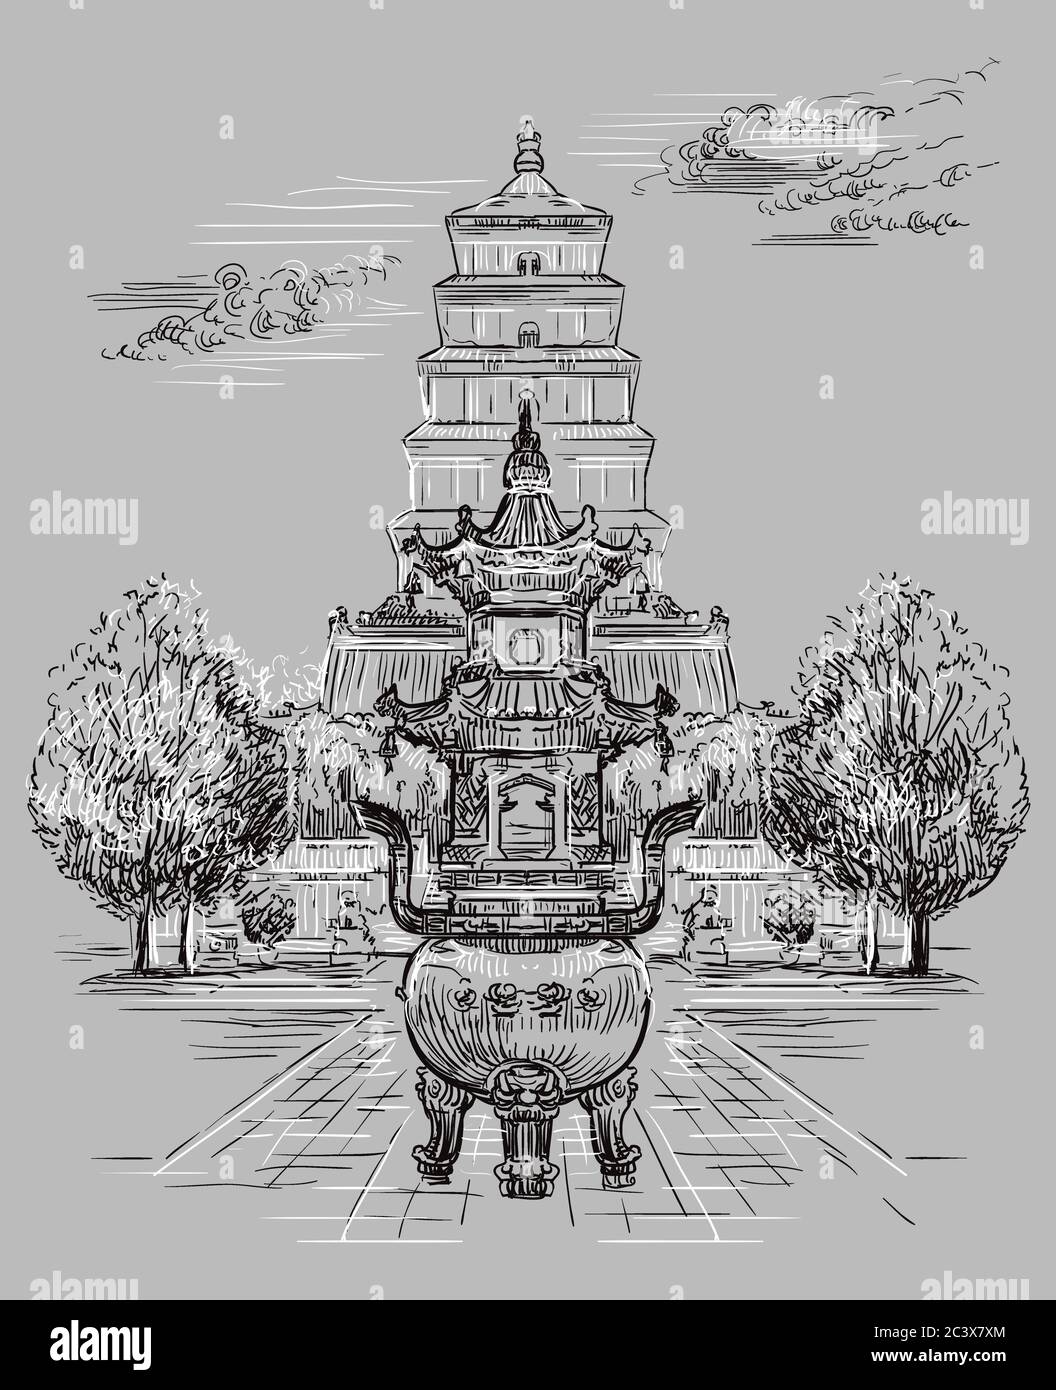 Grande Pagode de l'OIE sauvage dans le sud de Xi'an, province de Shaanxi, point de repère de la Chine. Illustration d'esquisse vectorielle dessinée à la main dans des couleurs monochromes isolées sur g Illustration de Vecteur